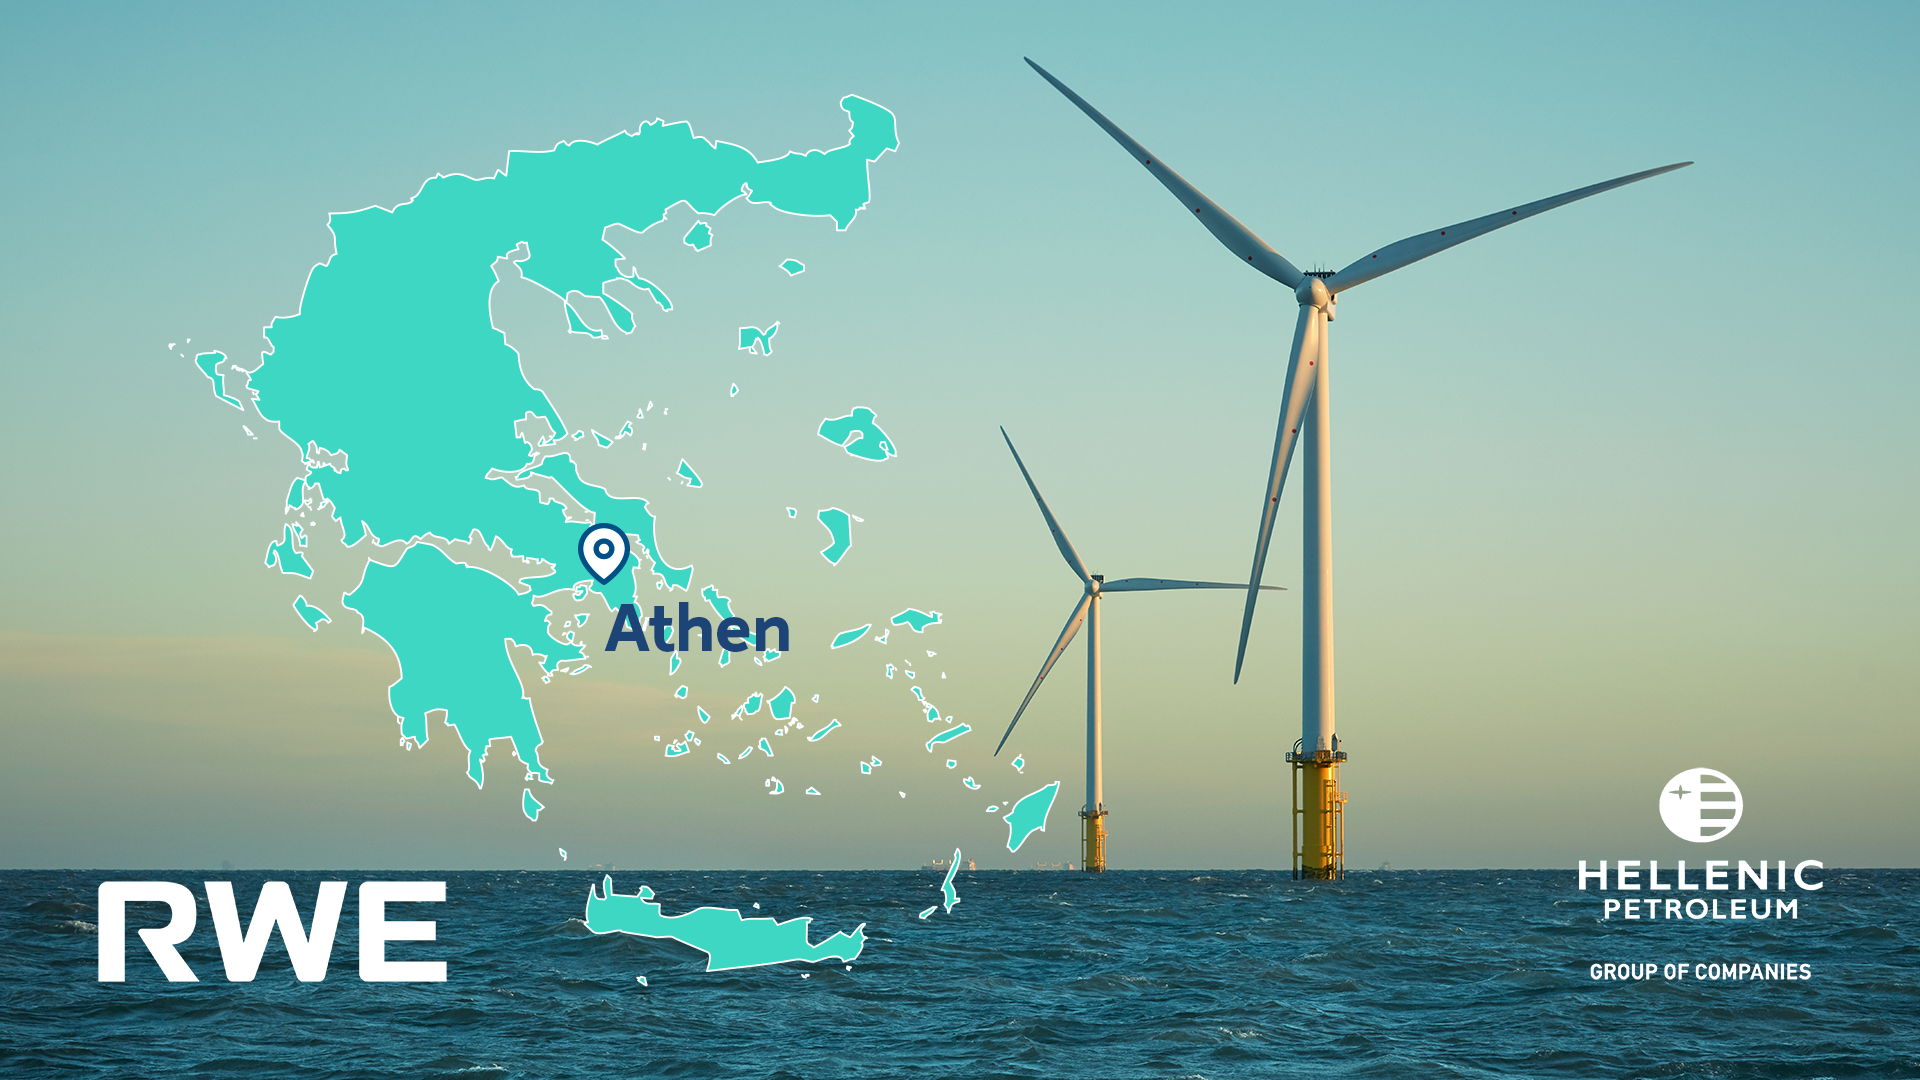 RWE und Hellenic Petroleum bündeln ihre Kräfte für Offshore-Wind in Griechenland